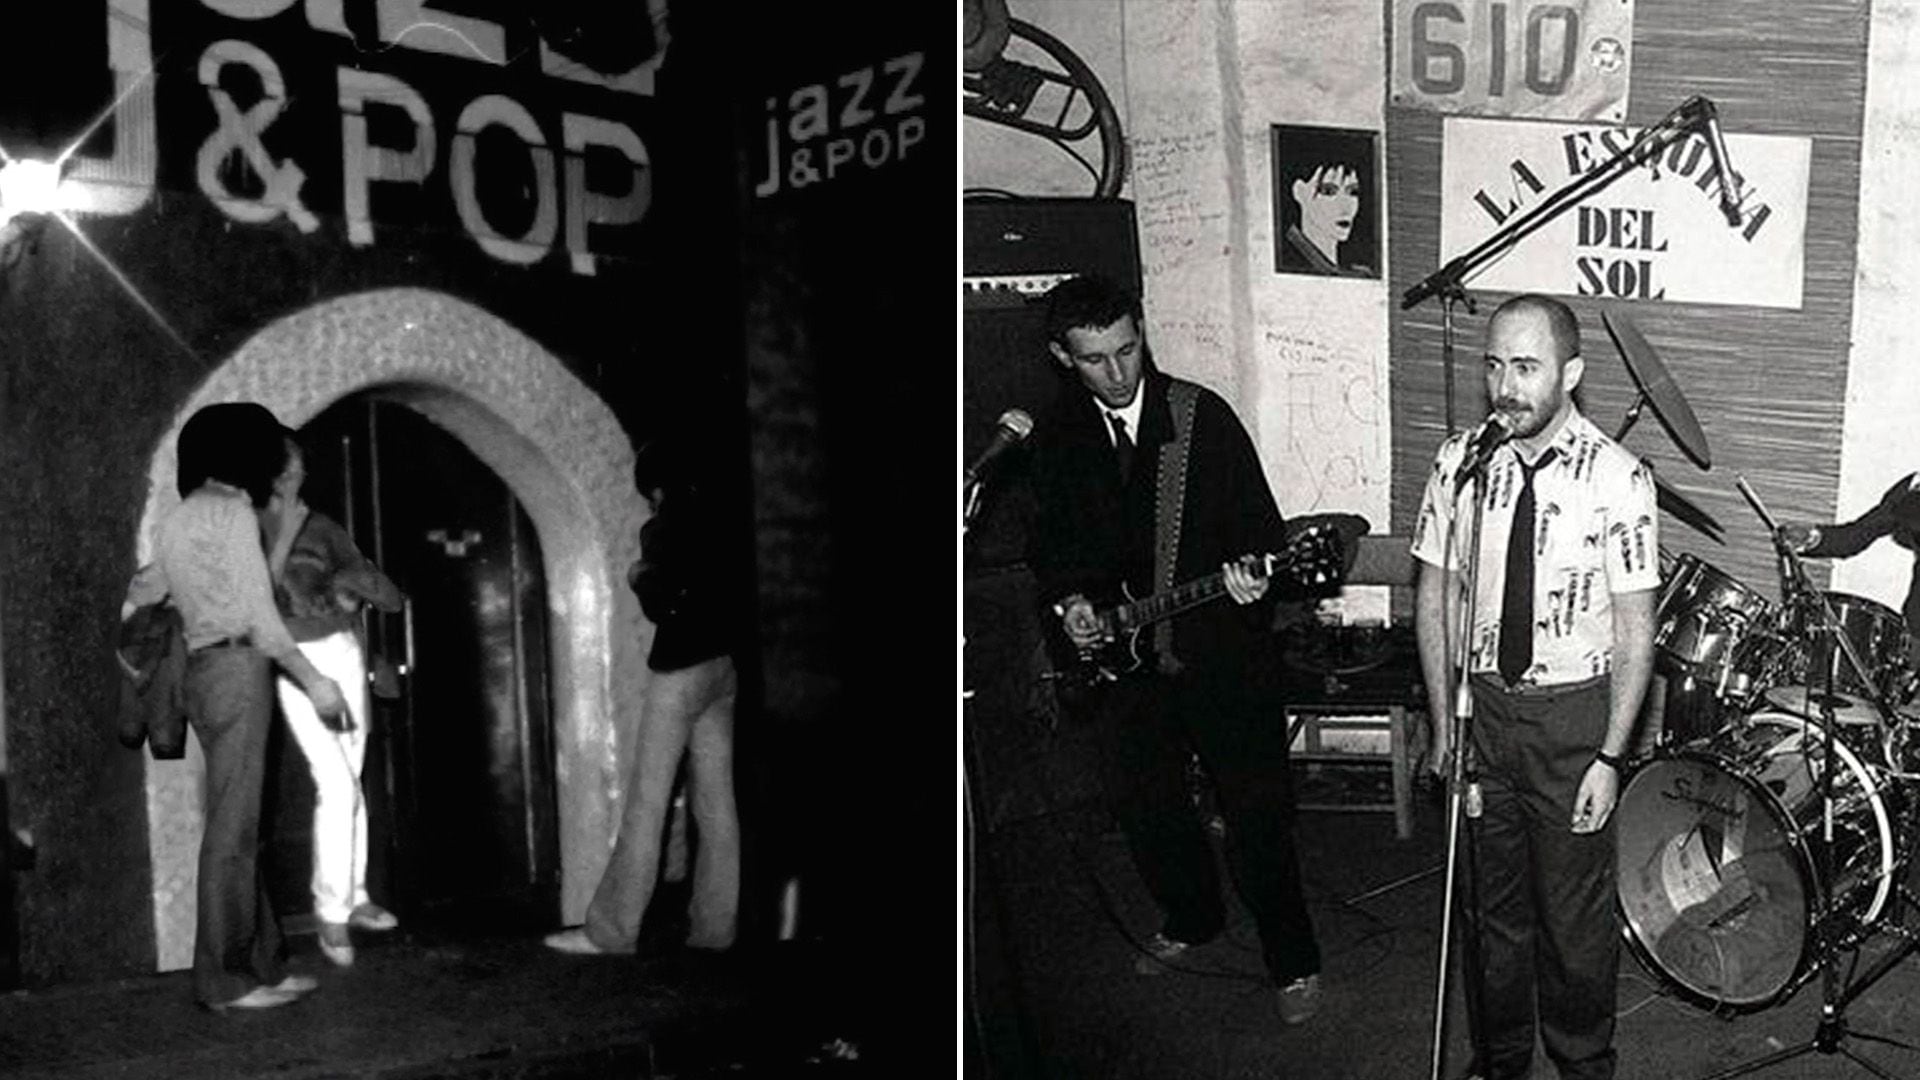 El boliche Jazz&Pop y La Esquina del Sol, dos emblemáticos lugares porteños por donde pasaron grandes bandas y músicos